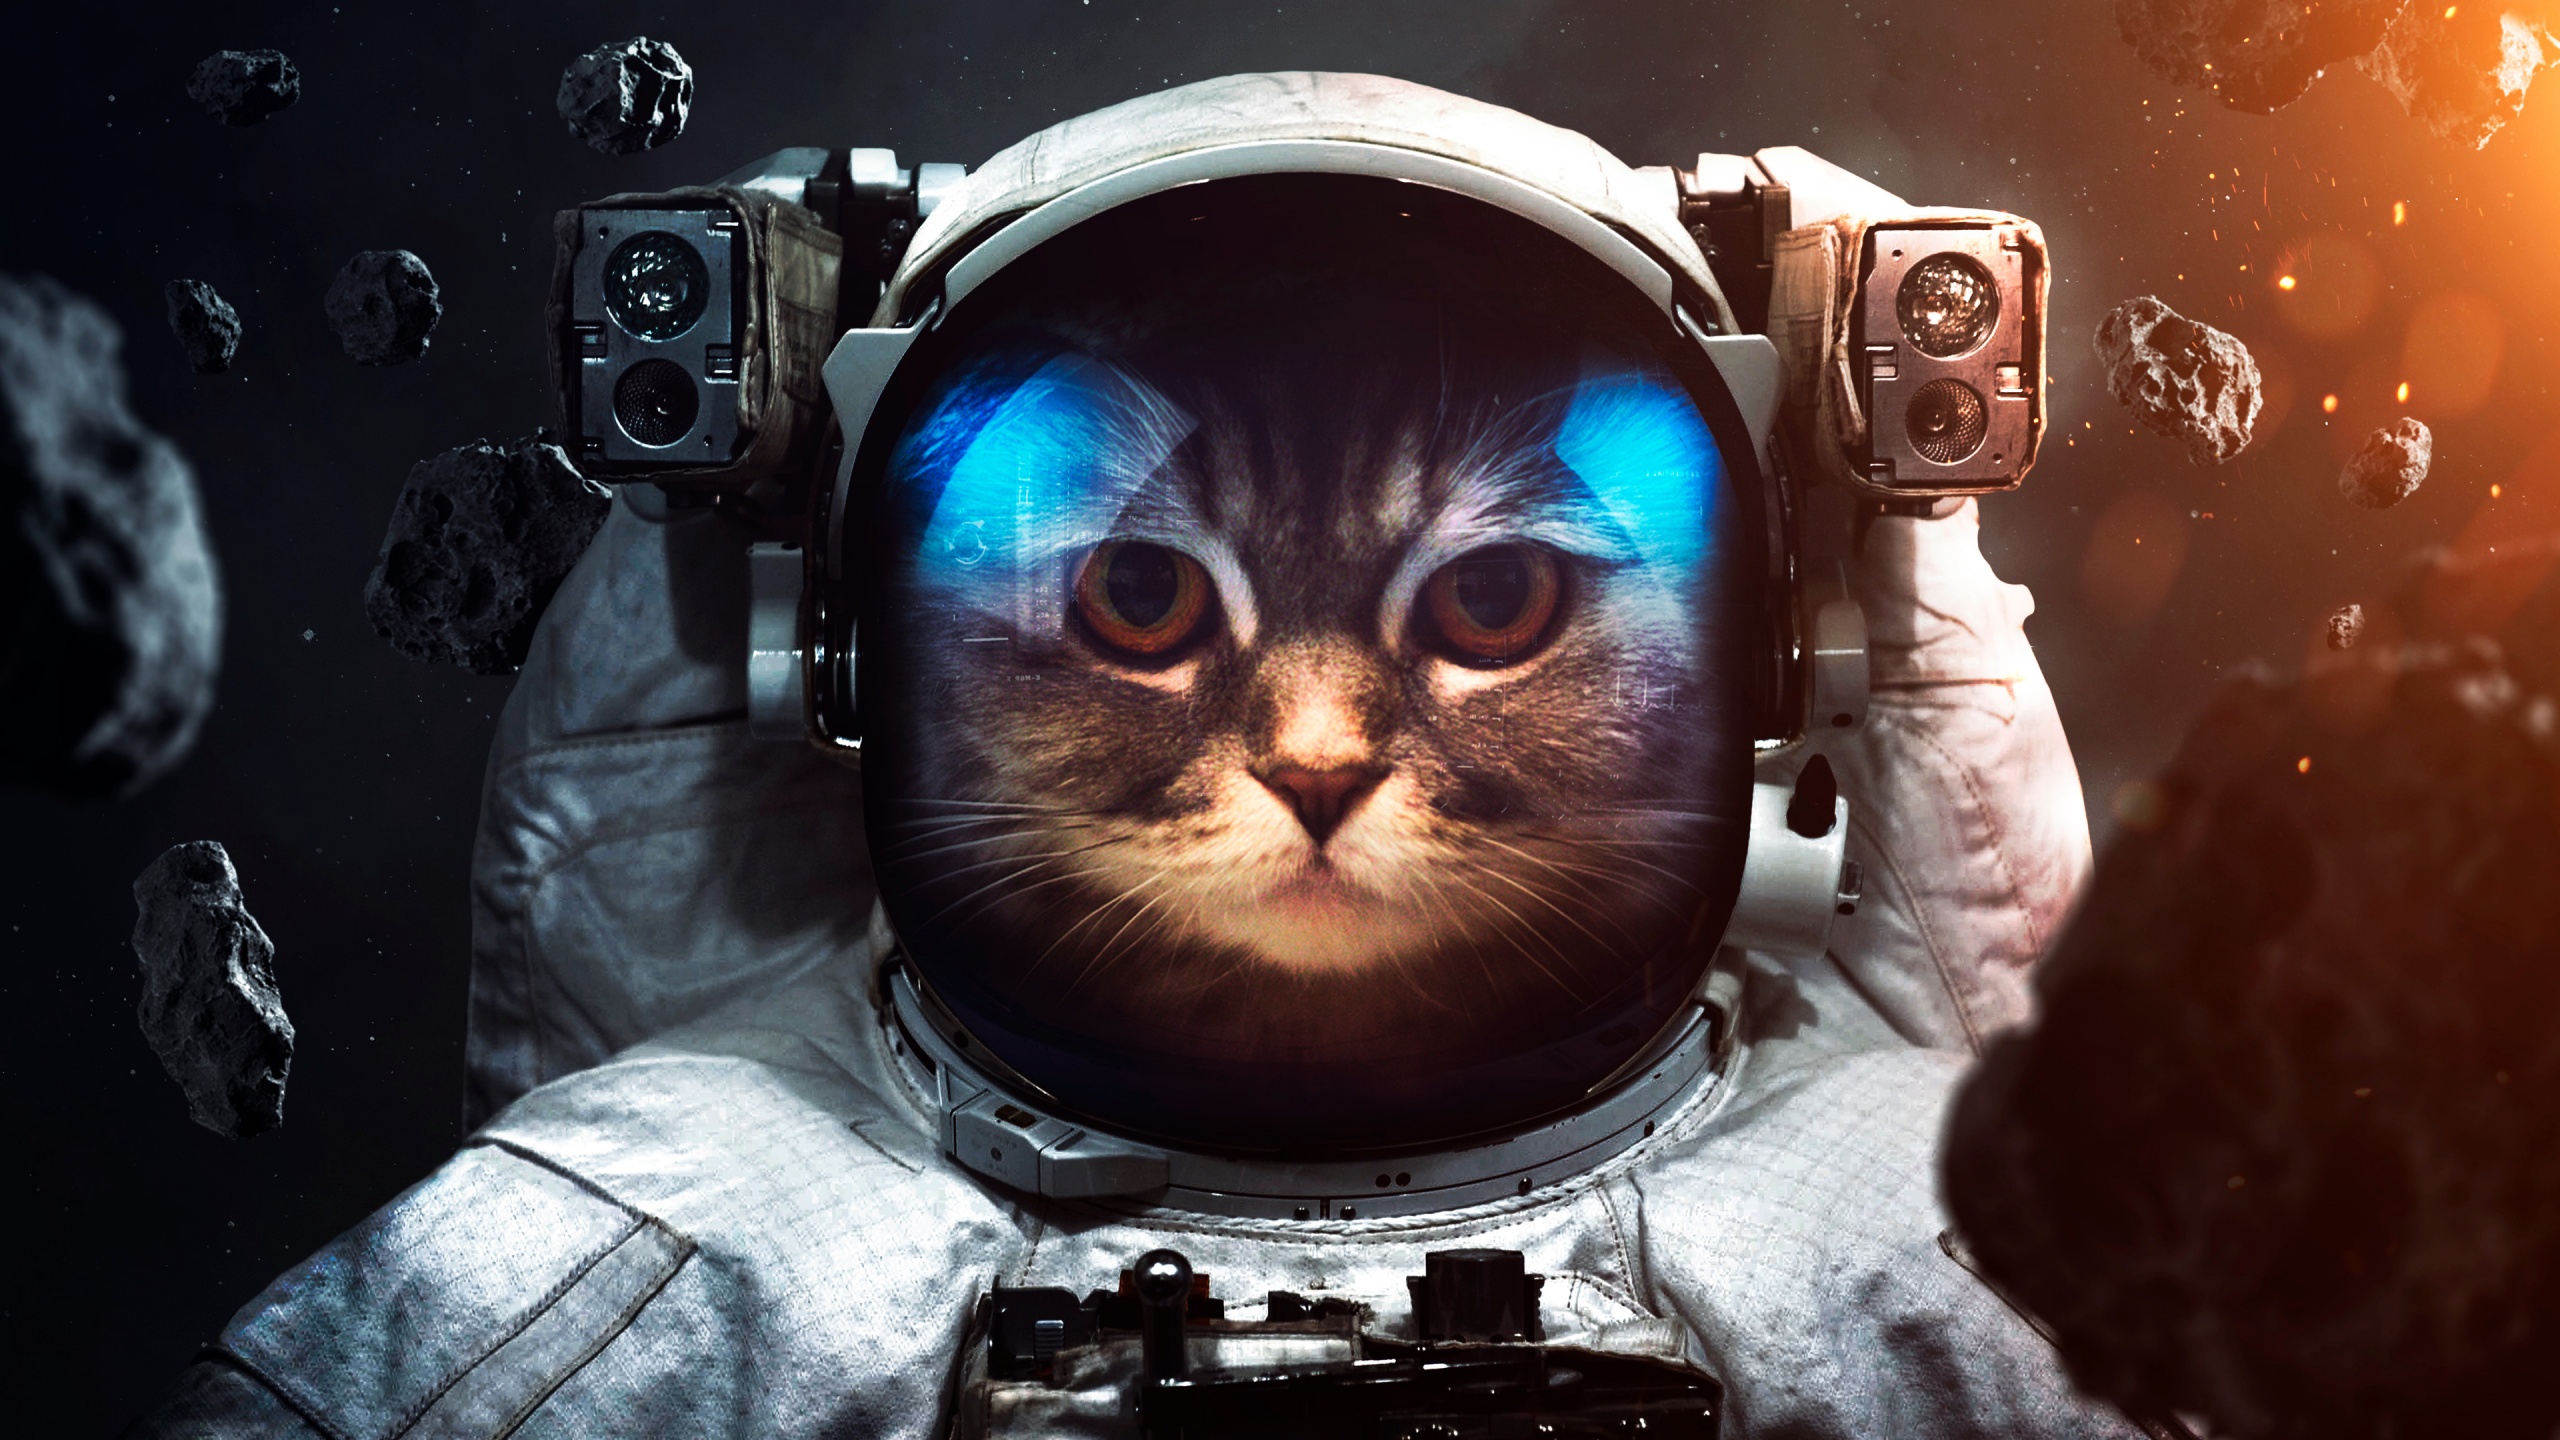 Space suit Wallpaper 4K Cat Asteroids Astronaut Stars 2483